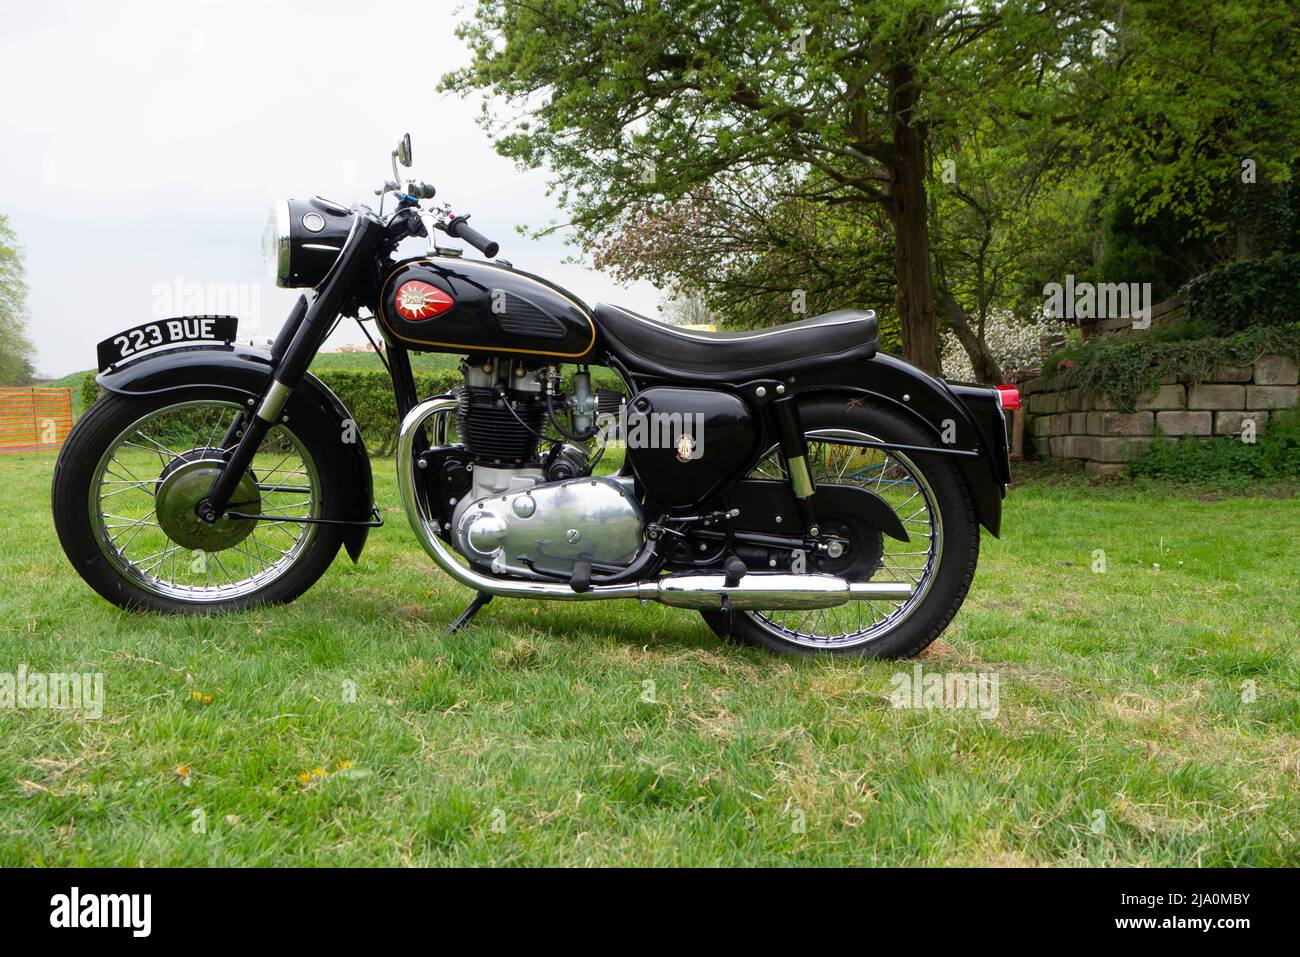 BSA Classic Motorcycle dans un champ vert herbacé Banque D'Images